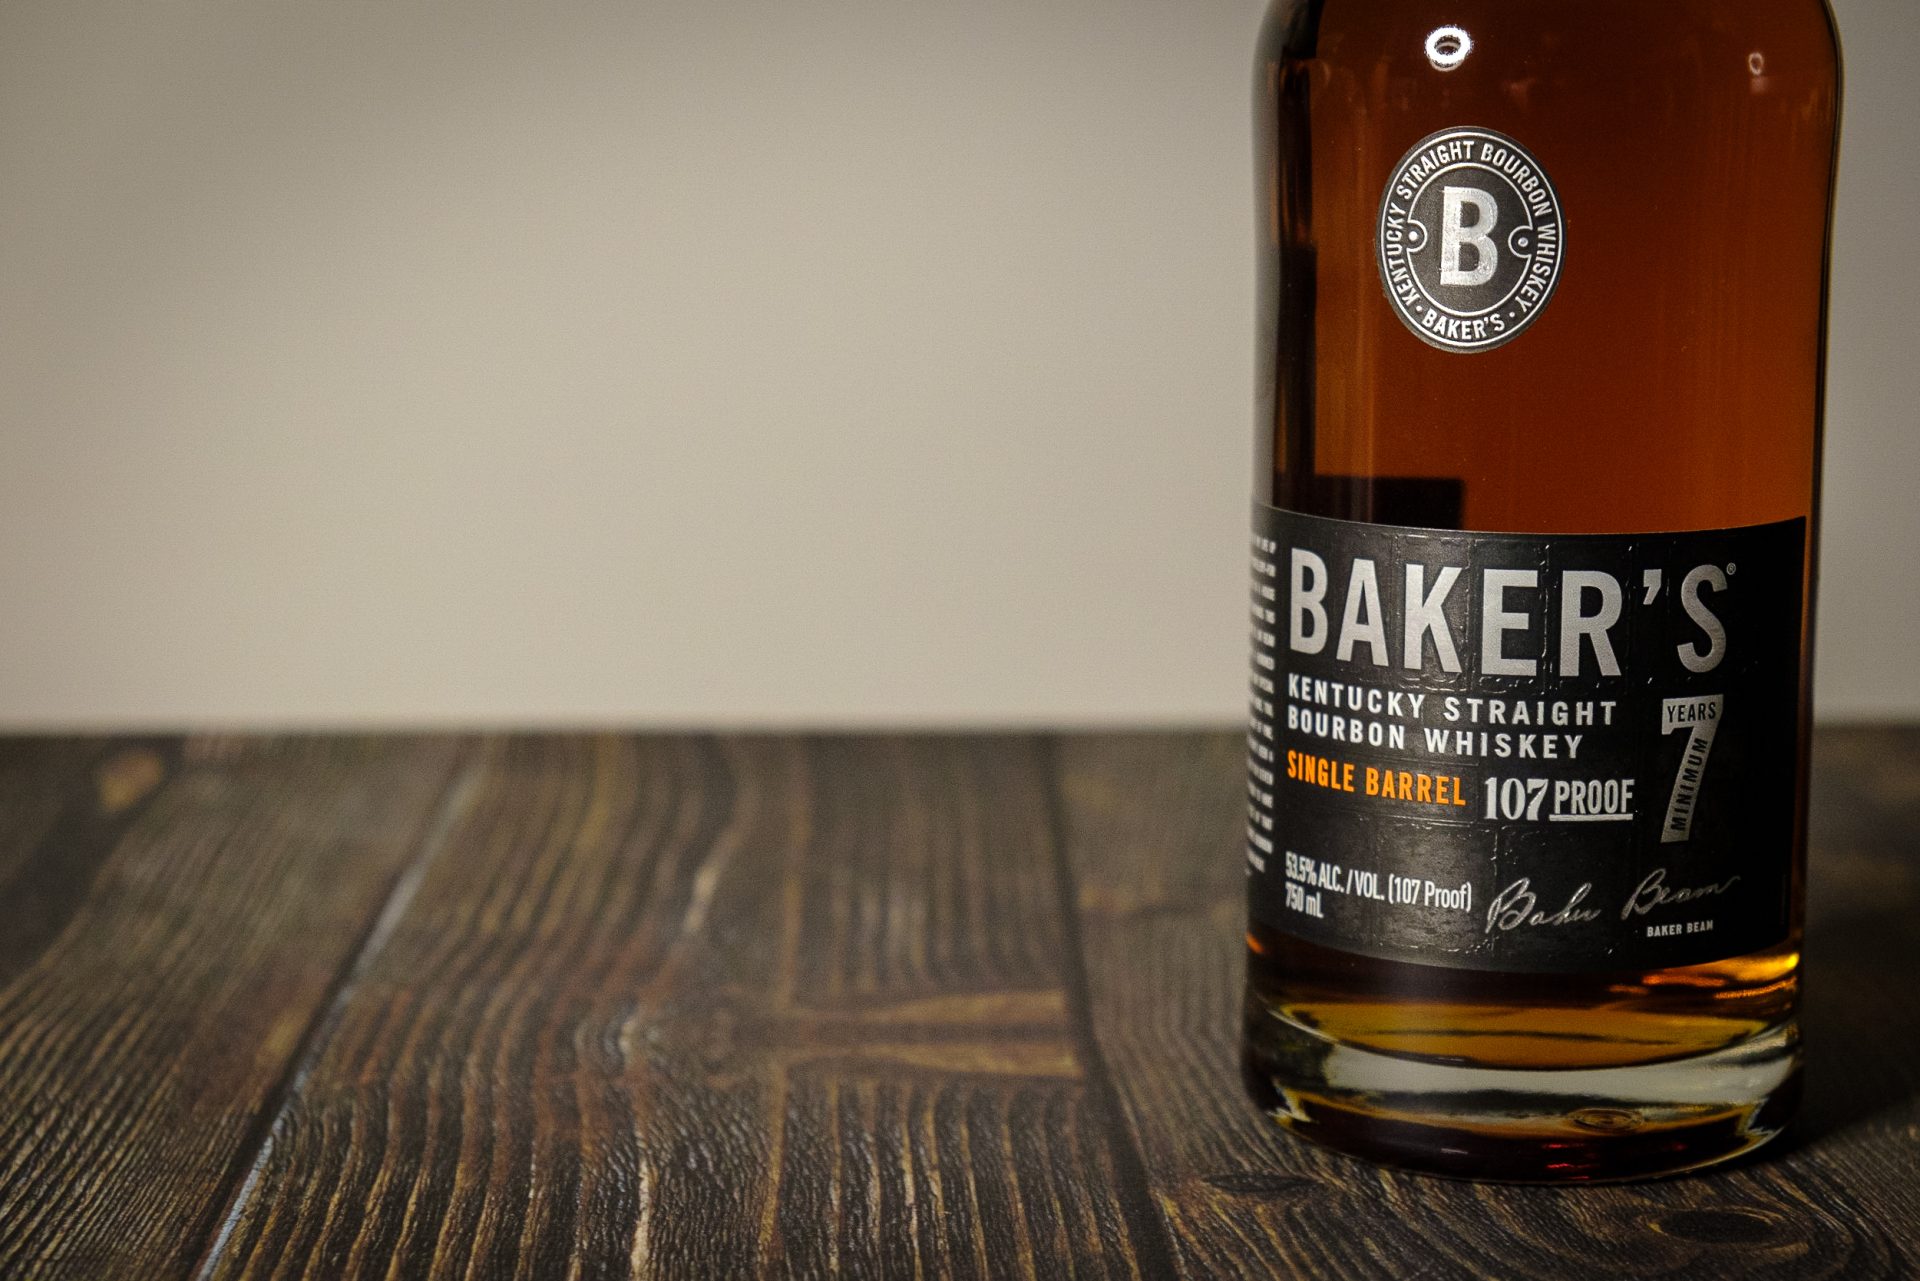 クラフトバーボン】ベイカーズ(BAKER'S)の味わい、飲み方を紹介 - WhiskyFreaks(ウイスキーフリークス)